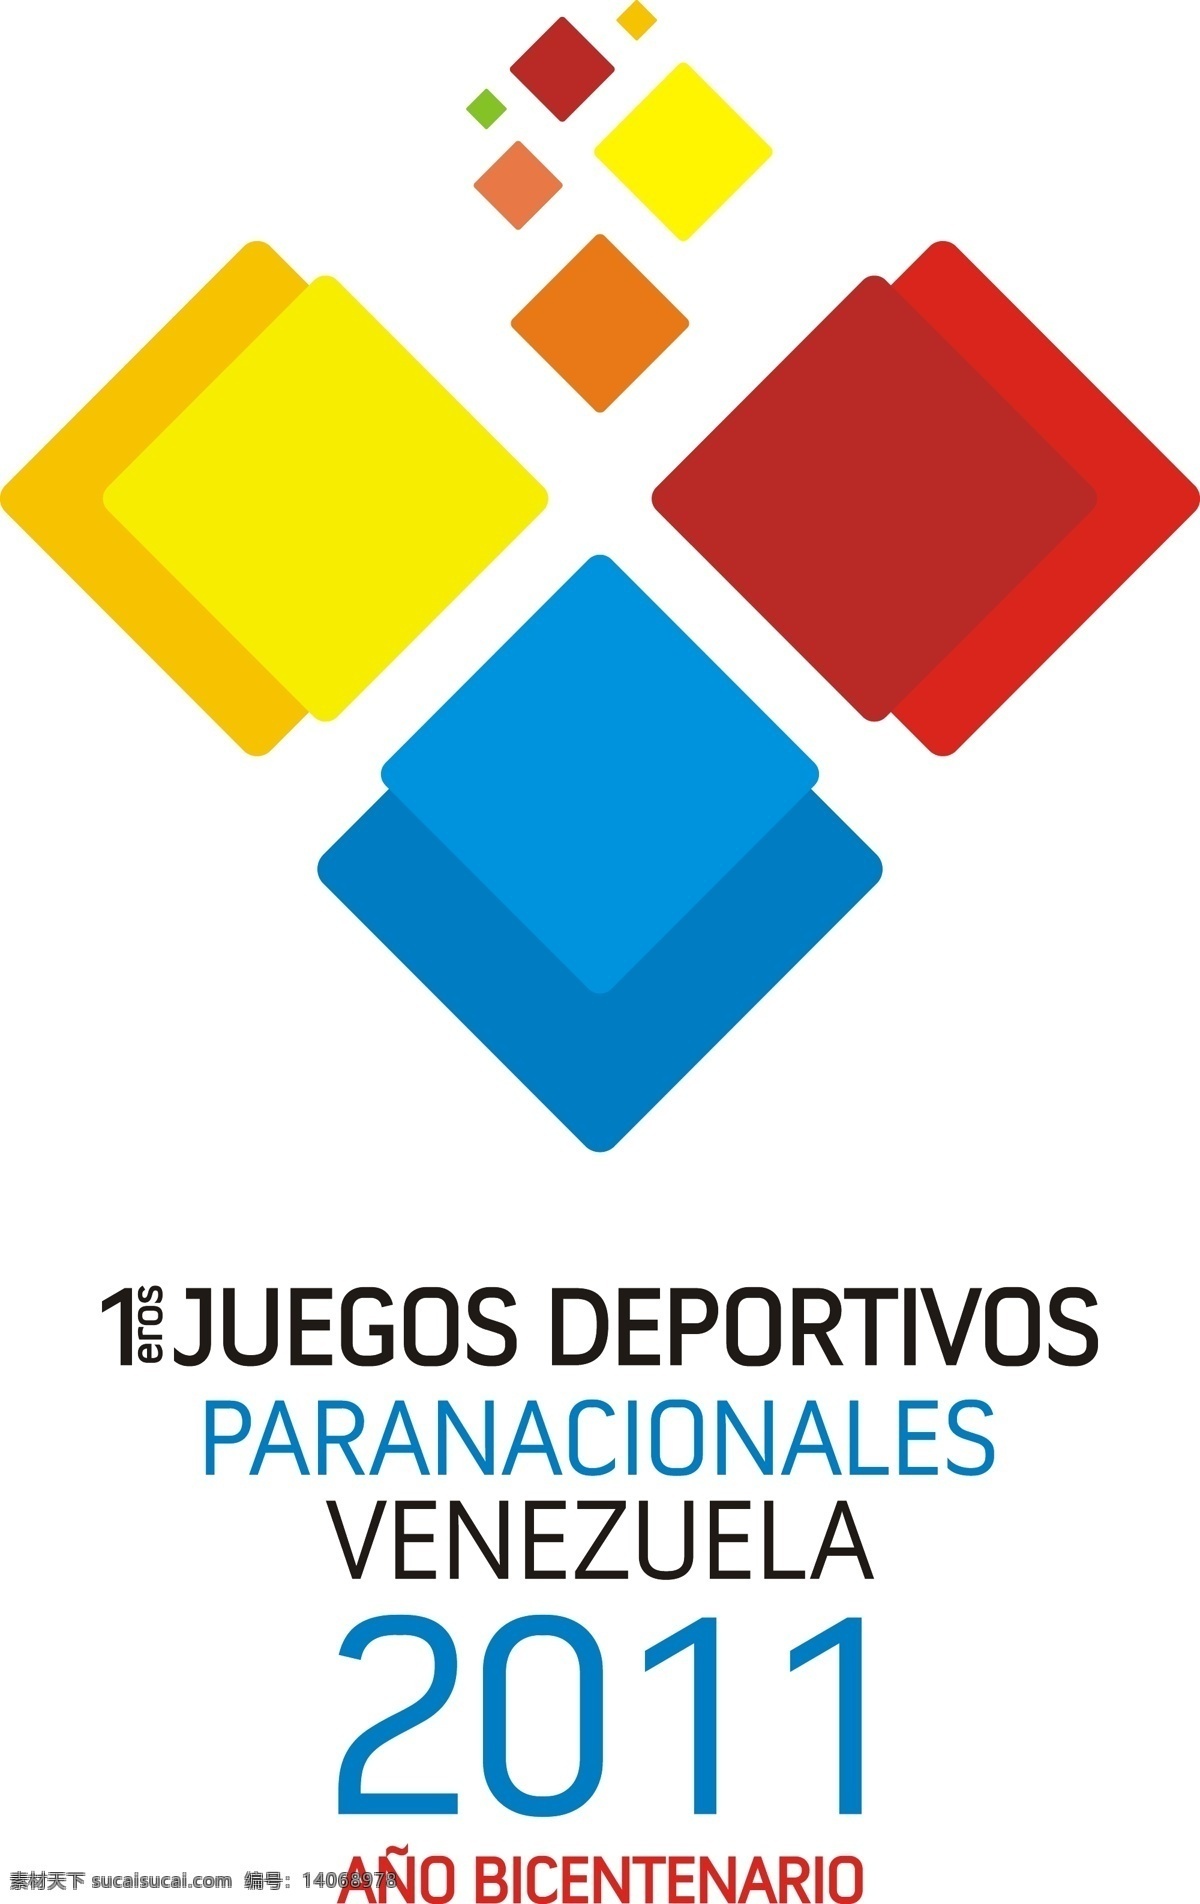 运动 paranacionales 委内瑞拉 2011 论坛 标识 公司 免费 品牌 品牌标识 商标 矢量标志下载 免费矢量标识 矢量 psd源文件 logo设计